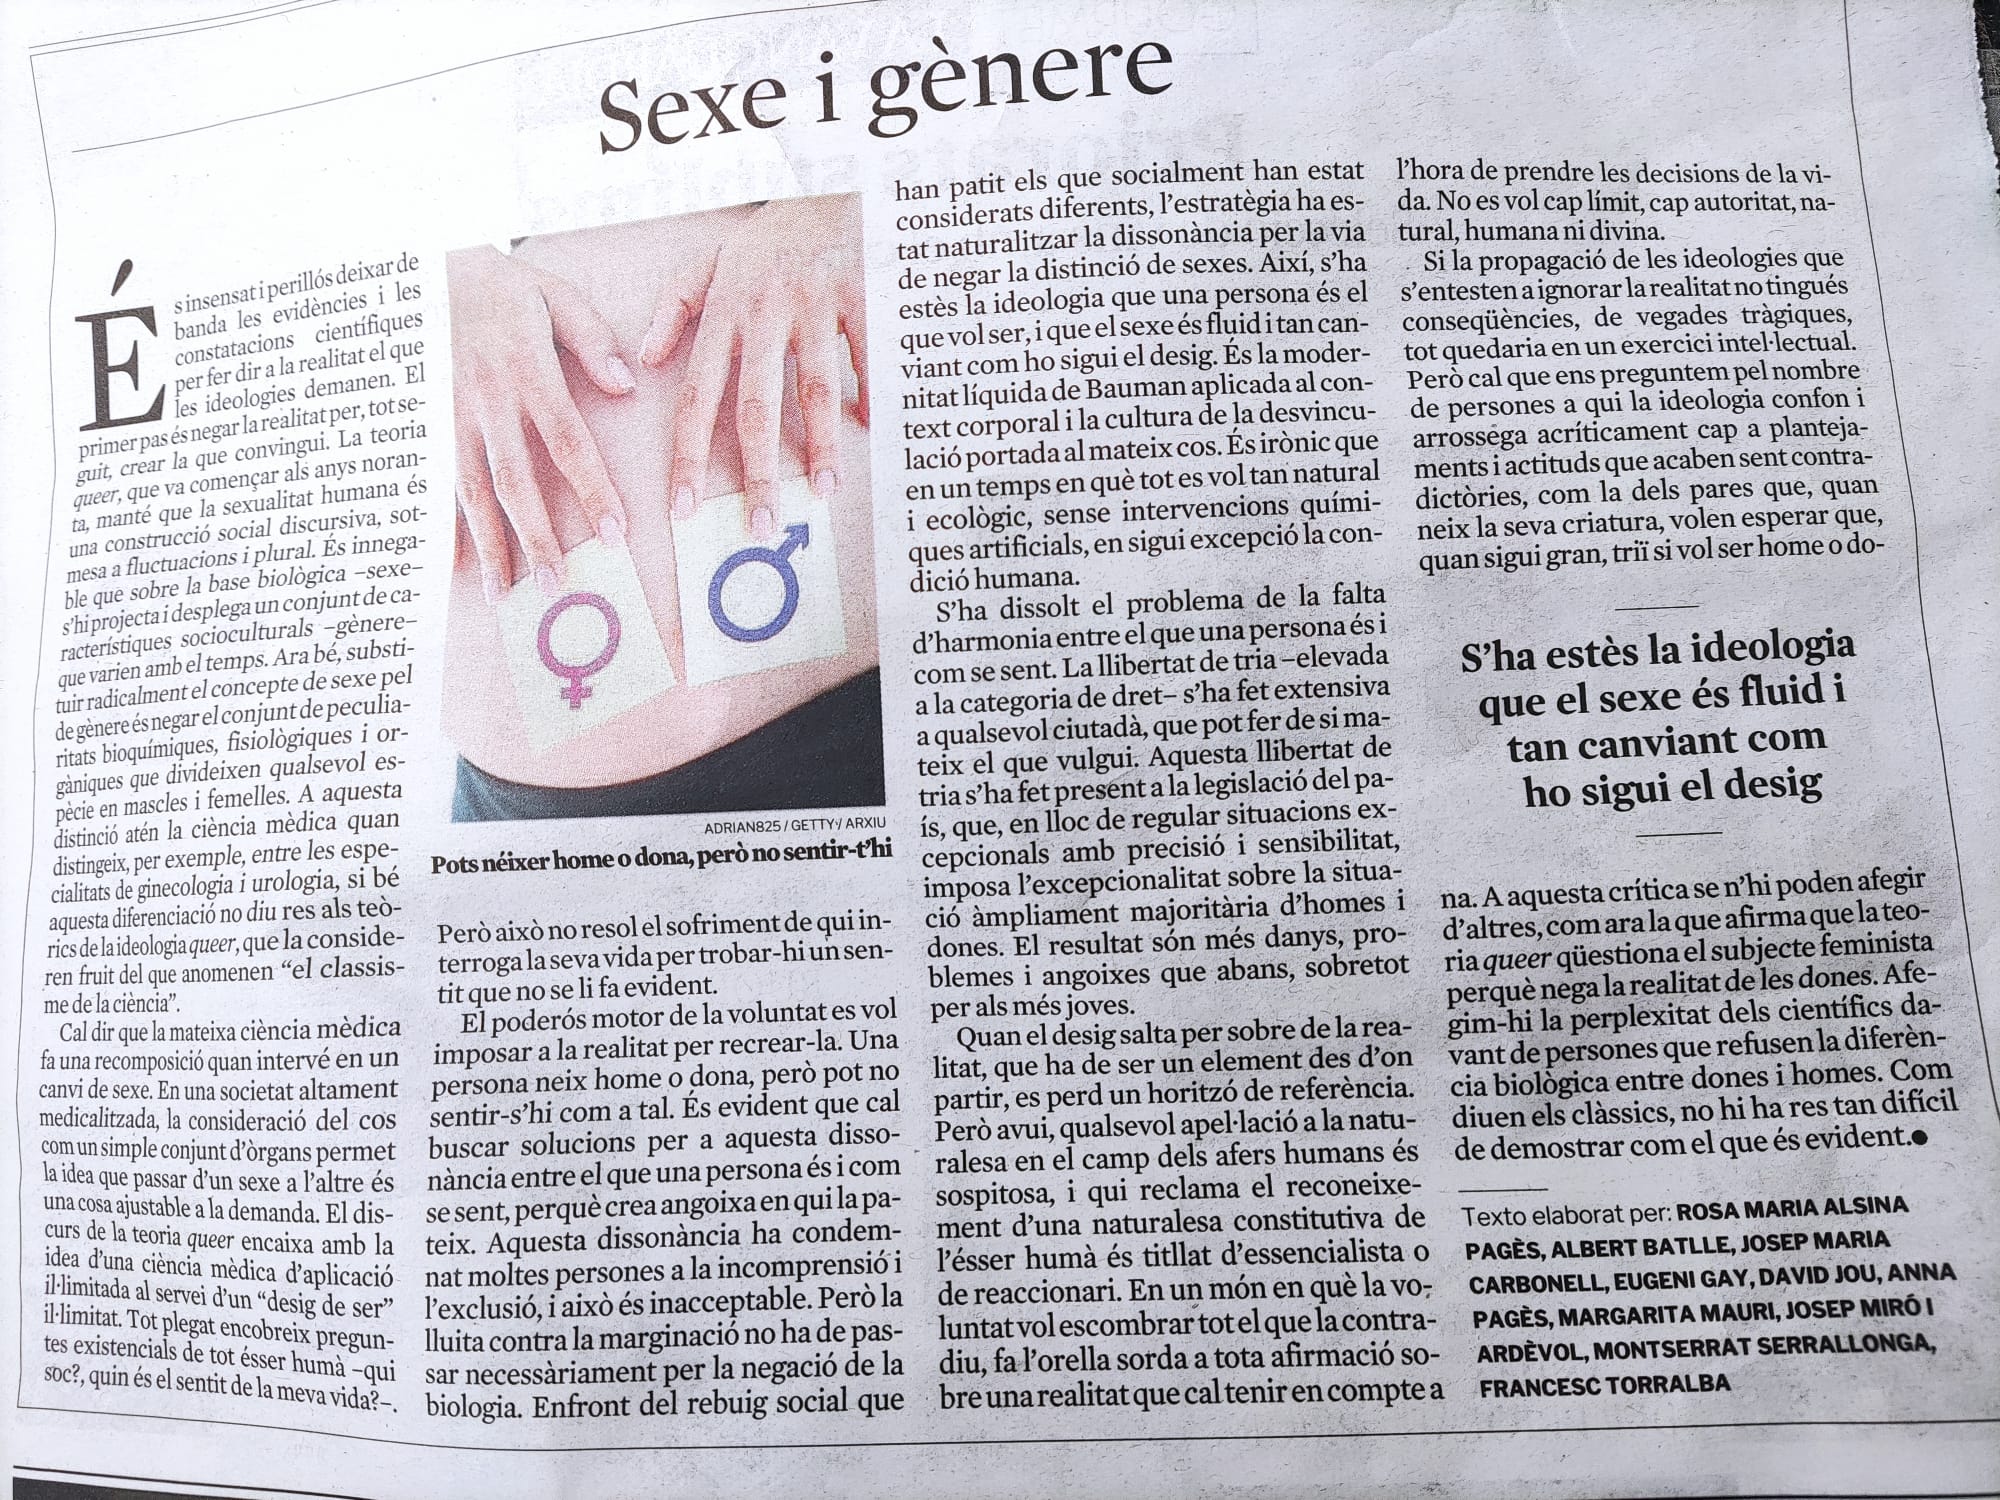 Artículo sobre sexo y género en la Vanguardia el 12 de noviembre por personalidades cristianas